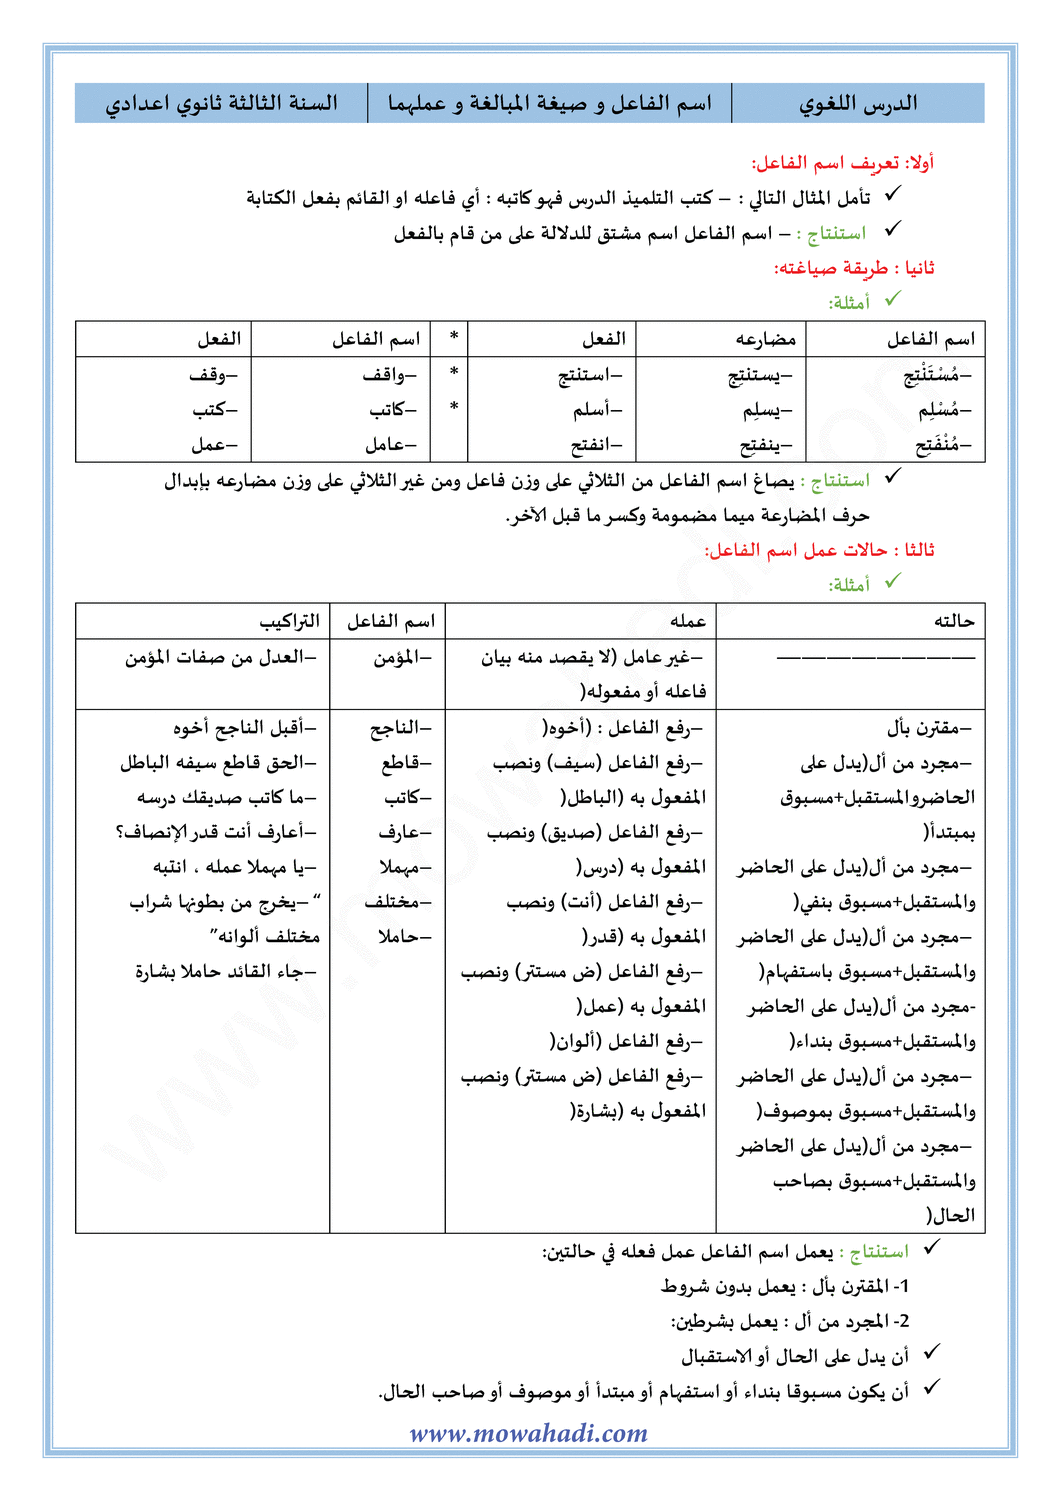 الدرس اللغوي الدرس اسم الفاعل و عمله (صيغ المبالغة) للسنة الثالثة اعدادي في مادة اللغة العربية